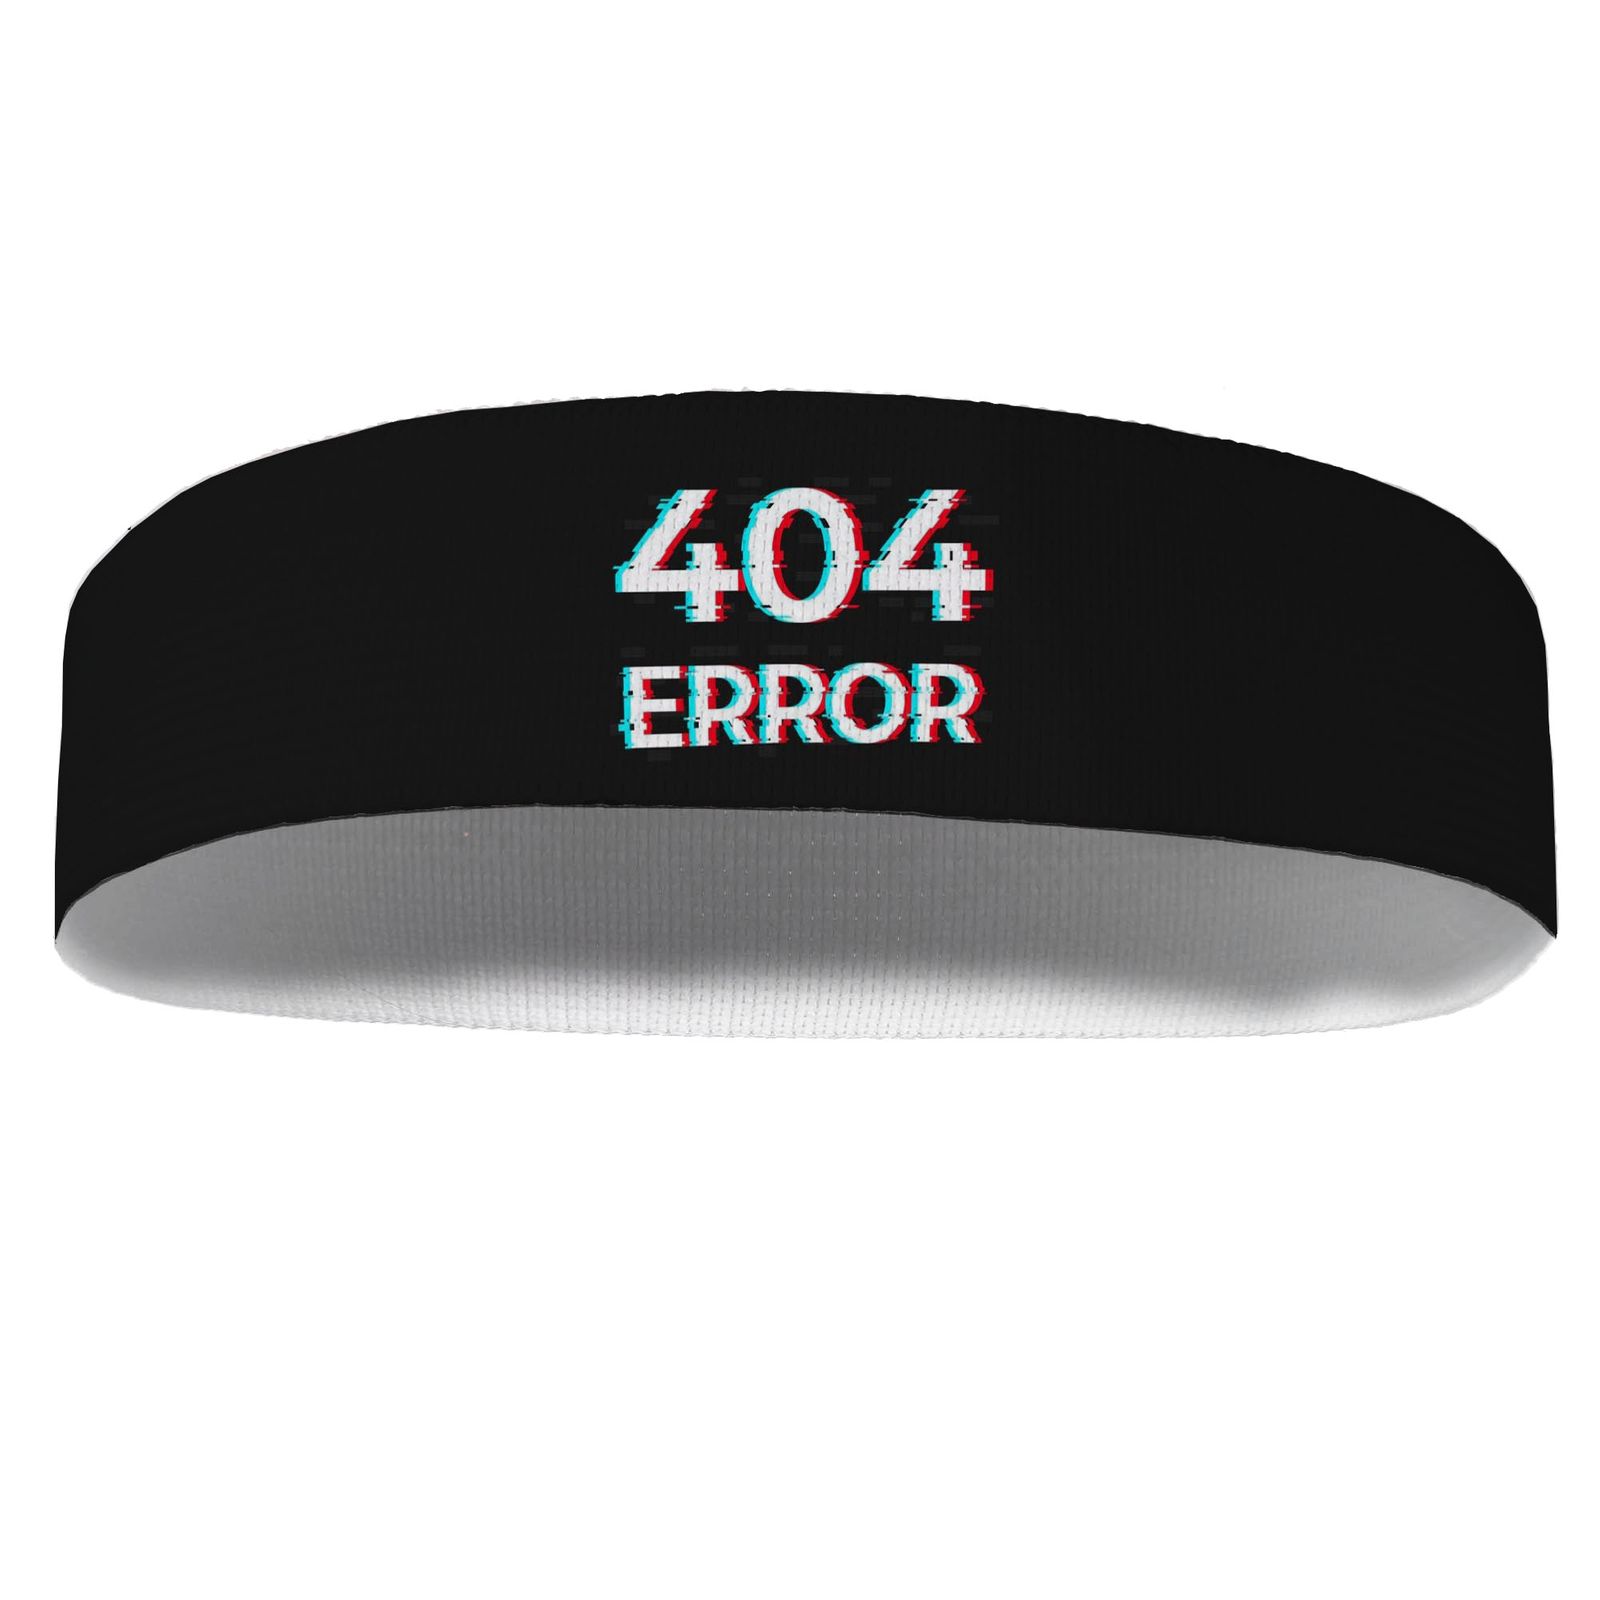 هدبند ورزشی آی تمر مدل 404 error